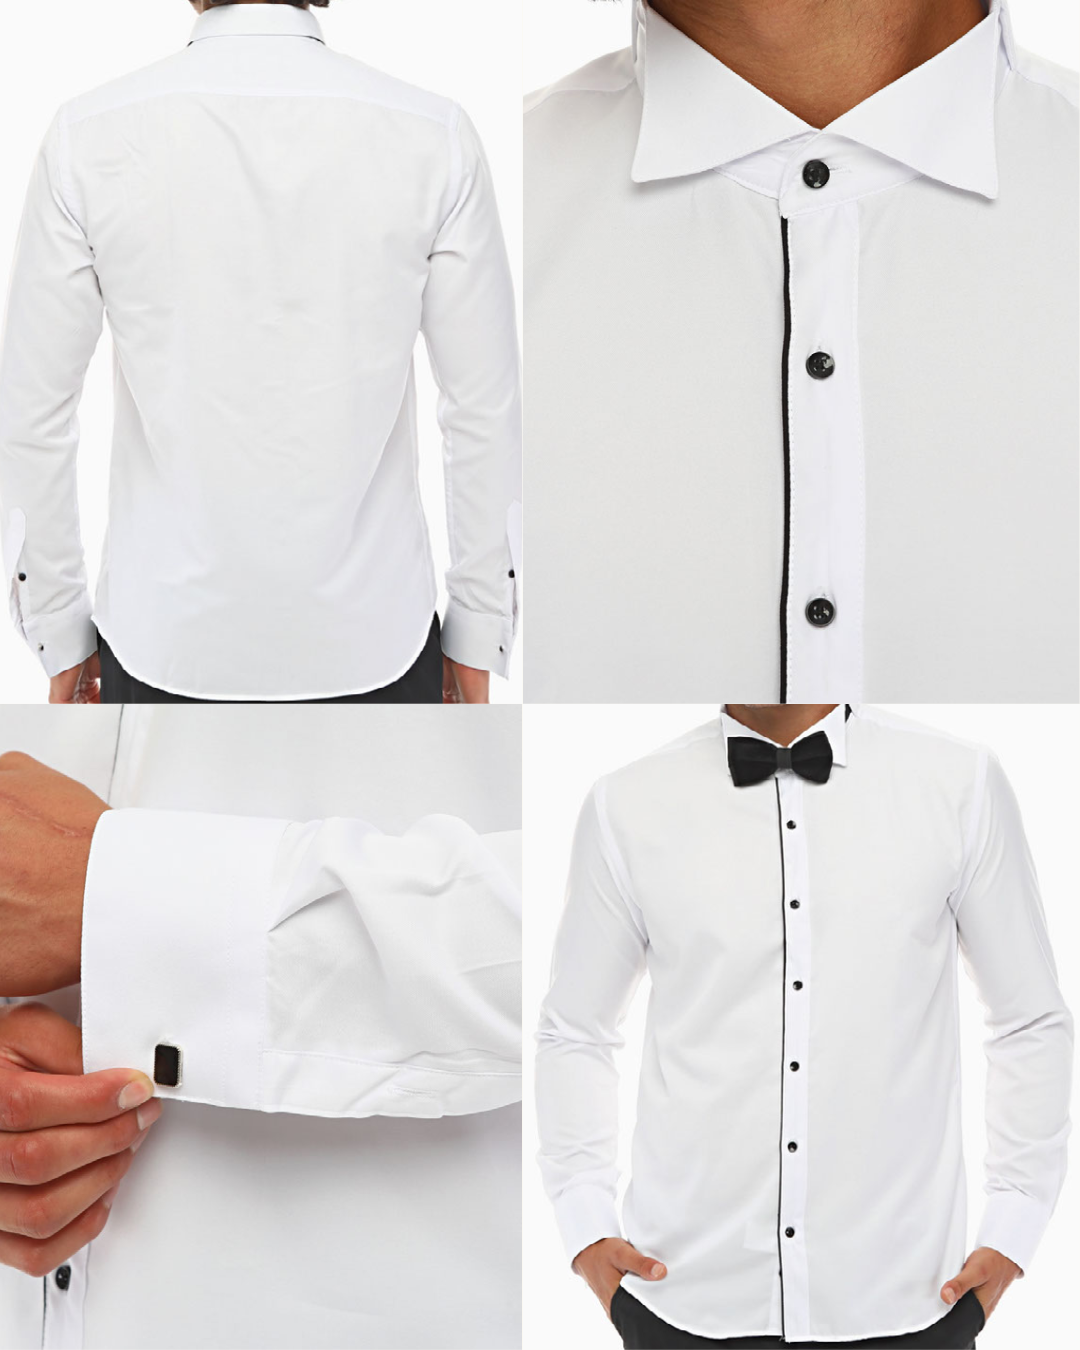 ICONIC STRIPE I - White & Black Tuxedo Shirt With Studs